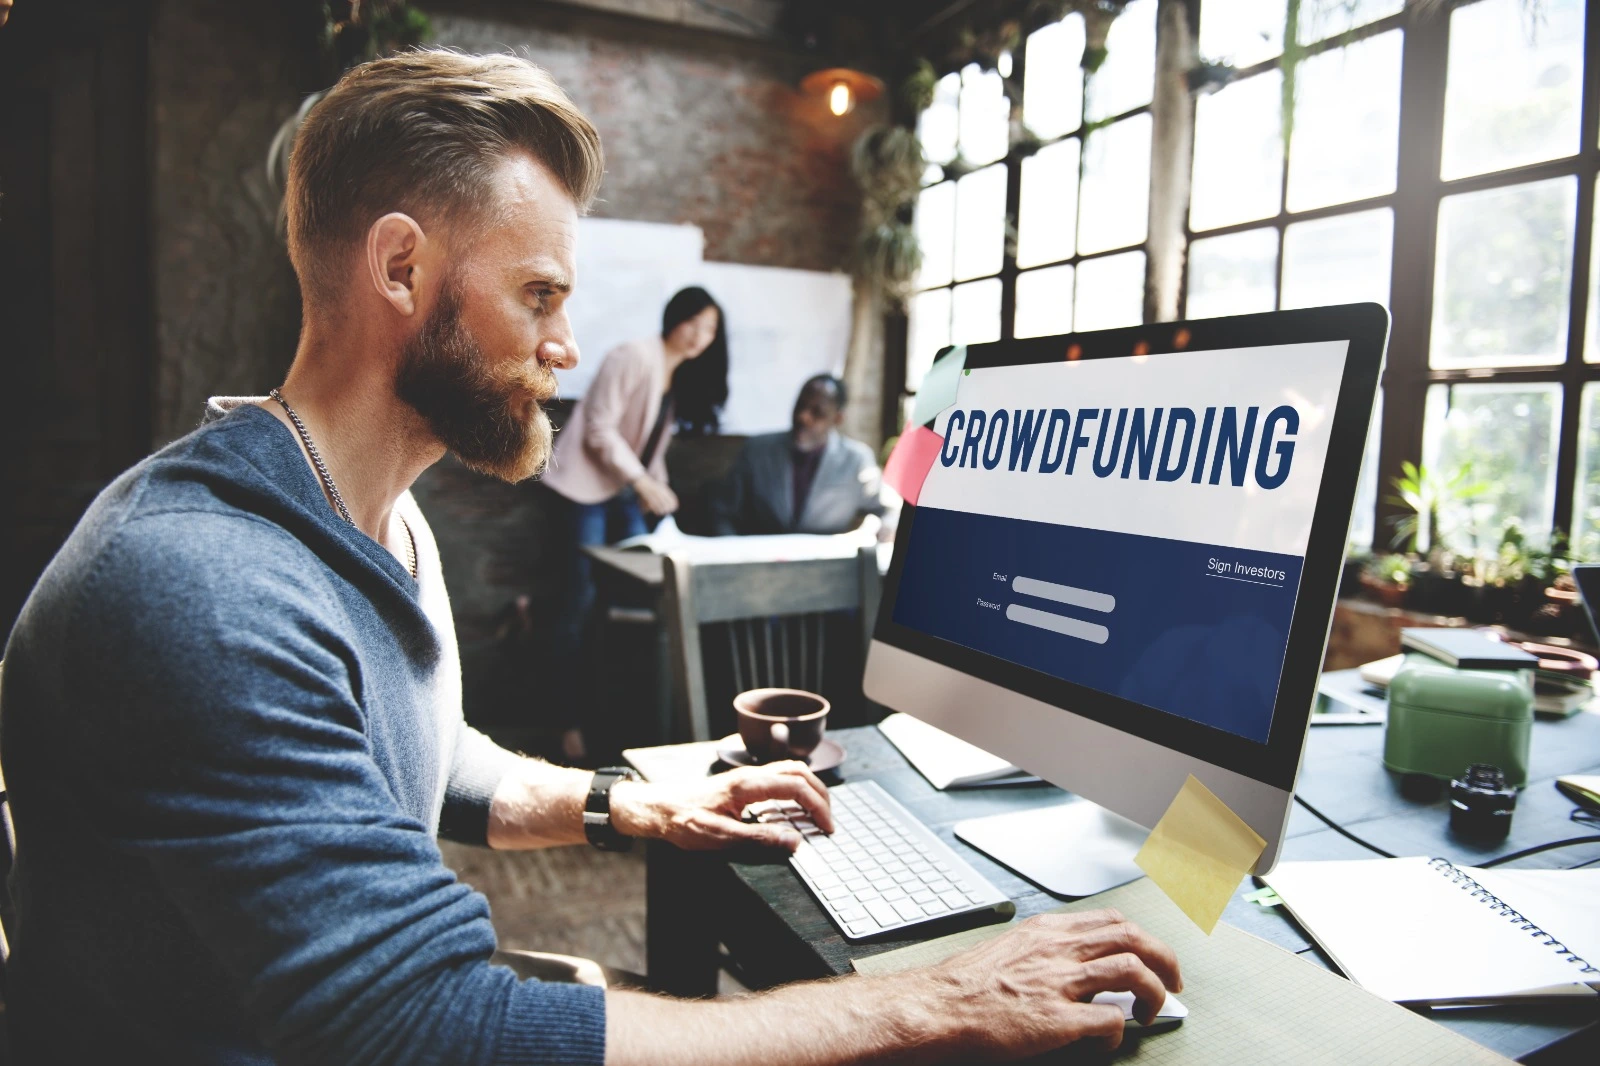 hombre al frente de una pantalla mostrando la palabra "crowdfunding"